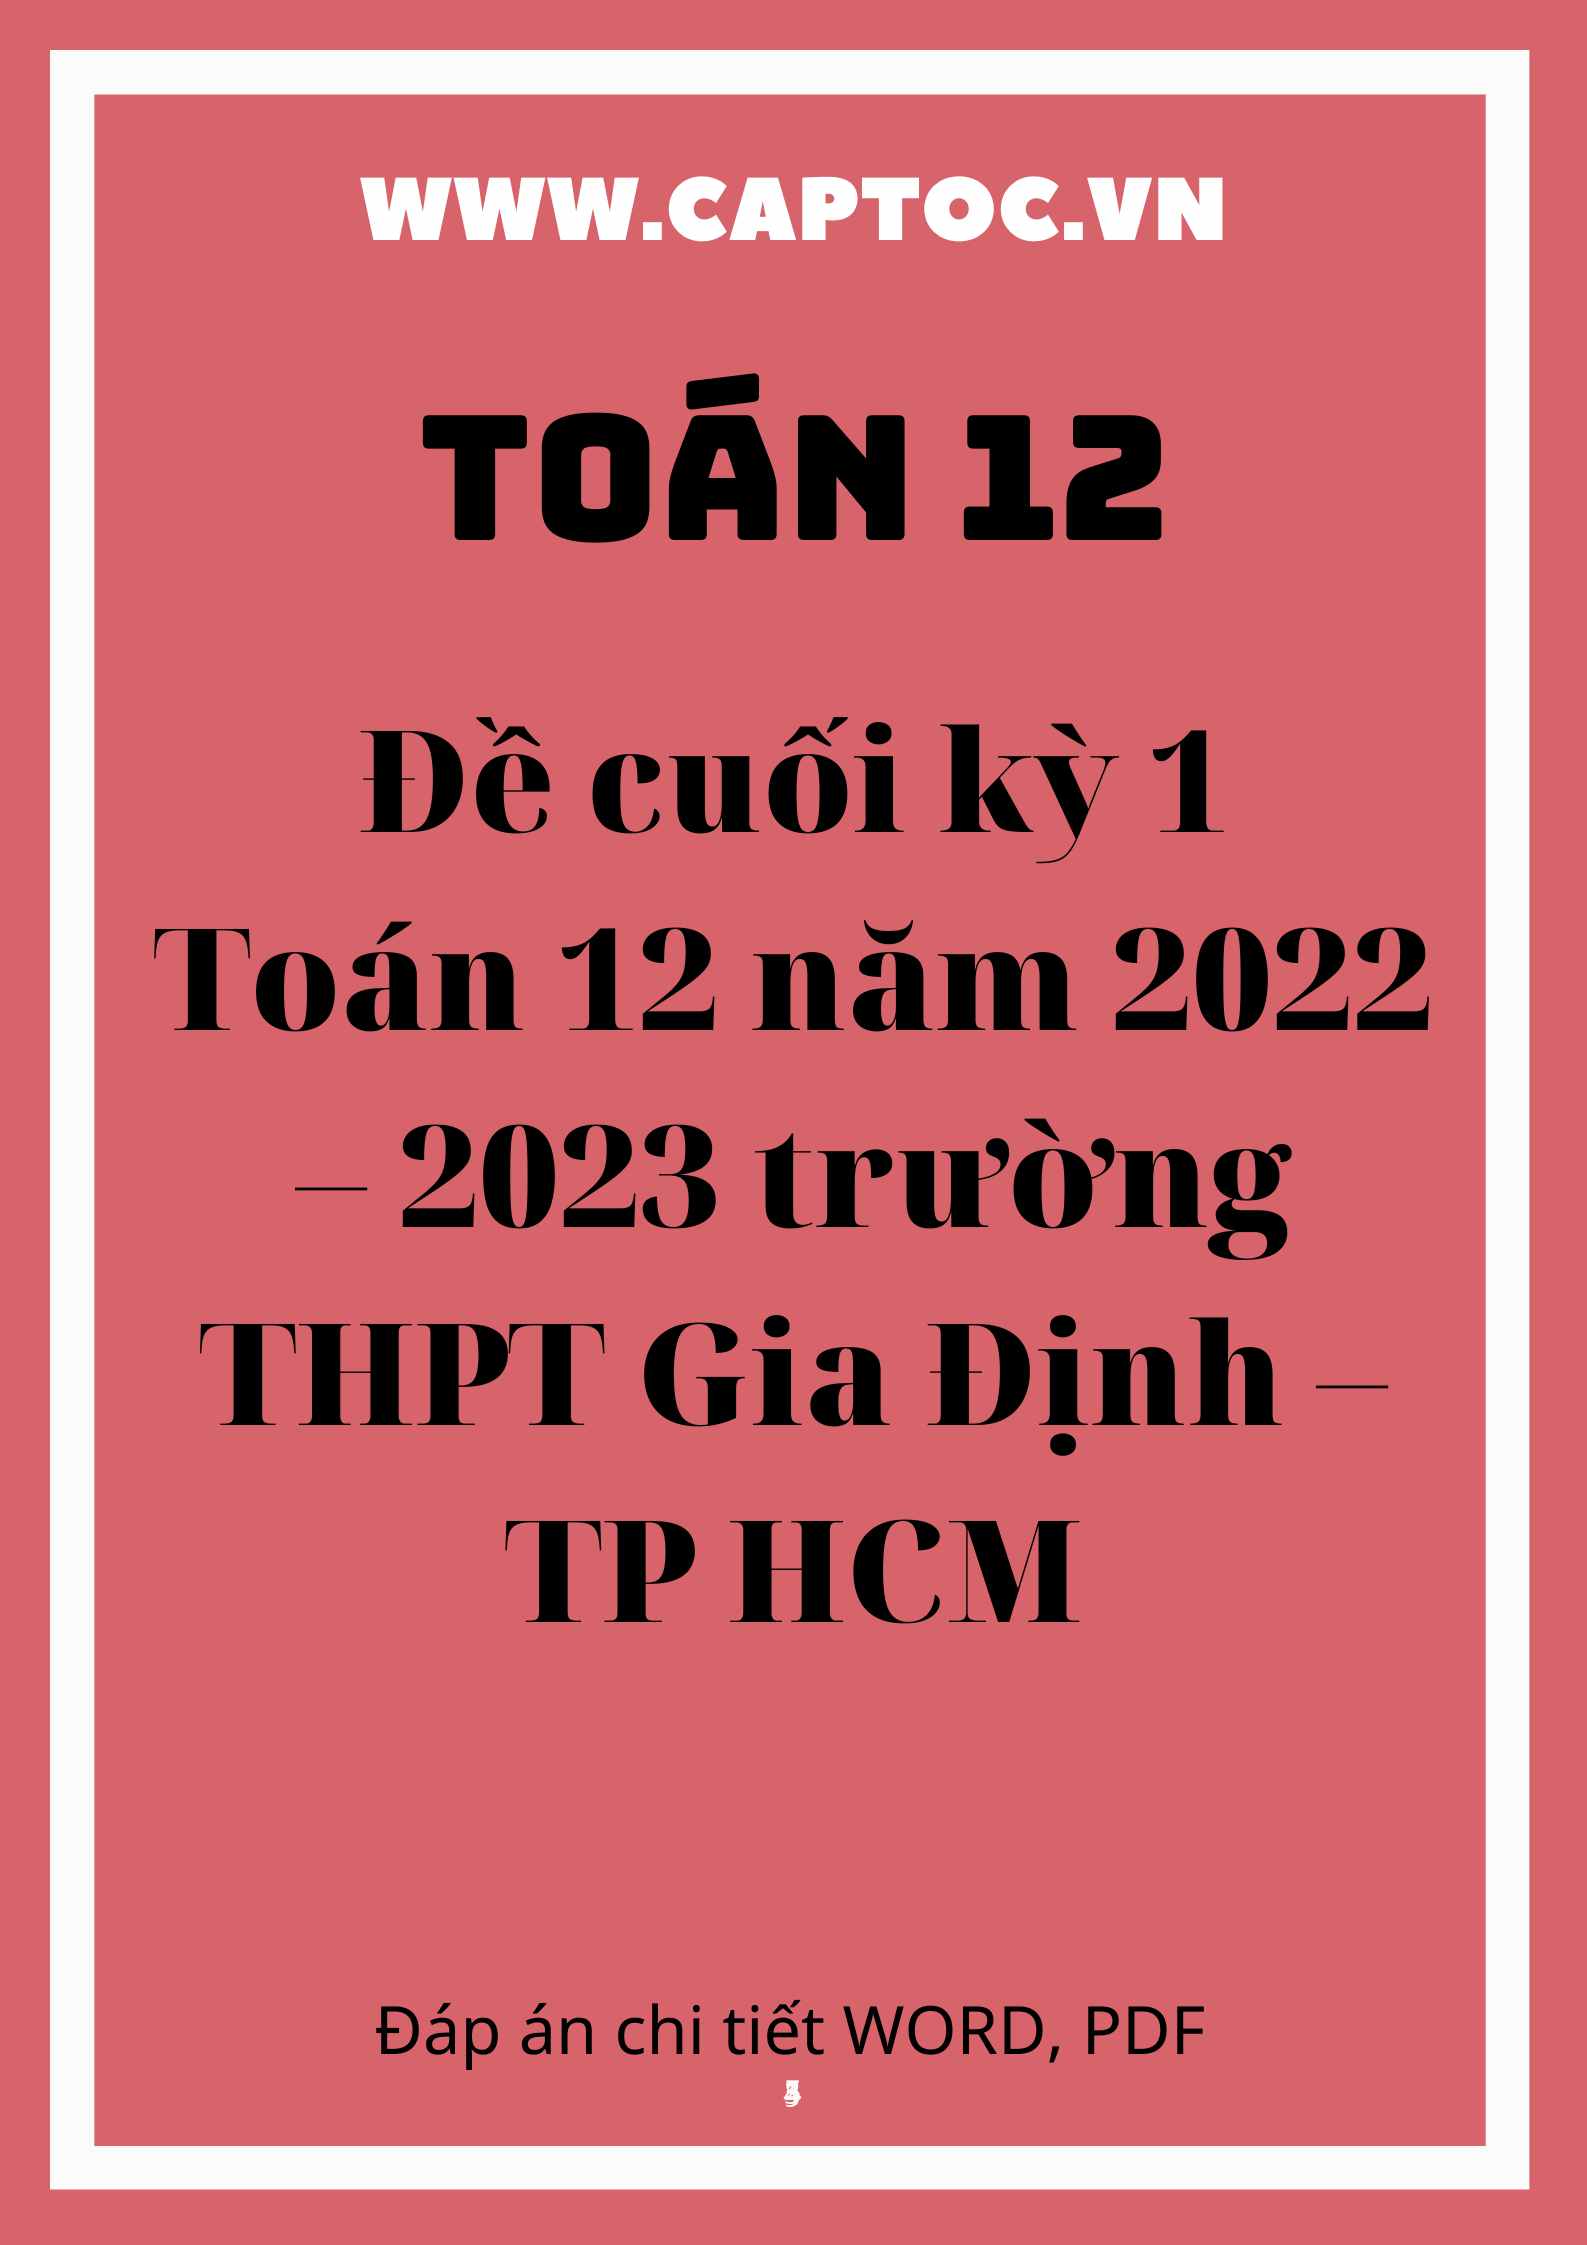 Đề cuối kì 1 Toán 12 năm 2022 – 2023 trường THPT Gia Định – TP HCM